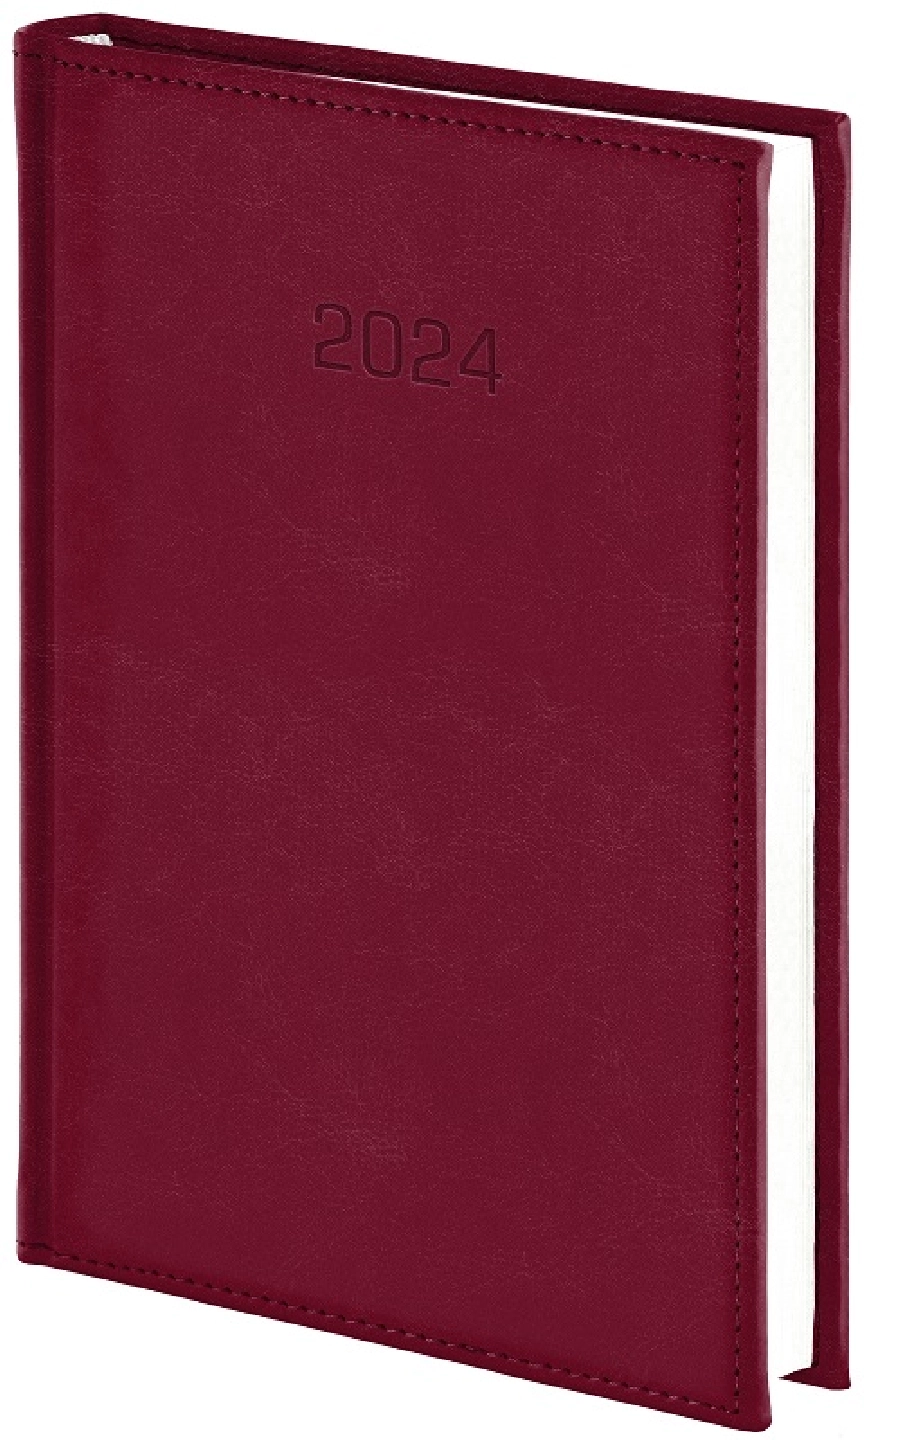 Nebraska kalendarz książkowy 2024 dzienny B5 GR-160080 brązowy